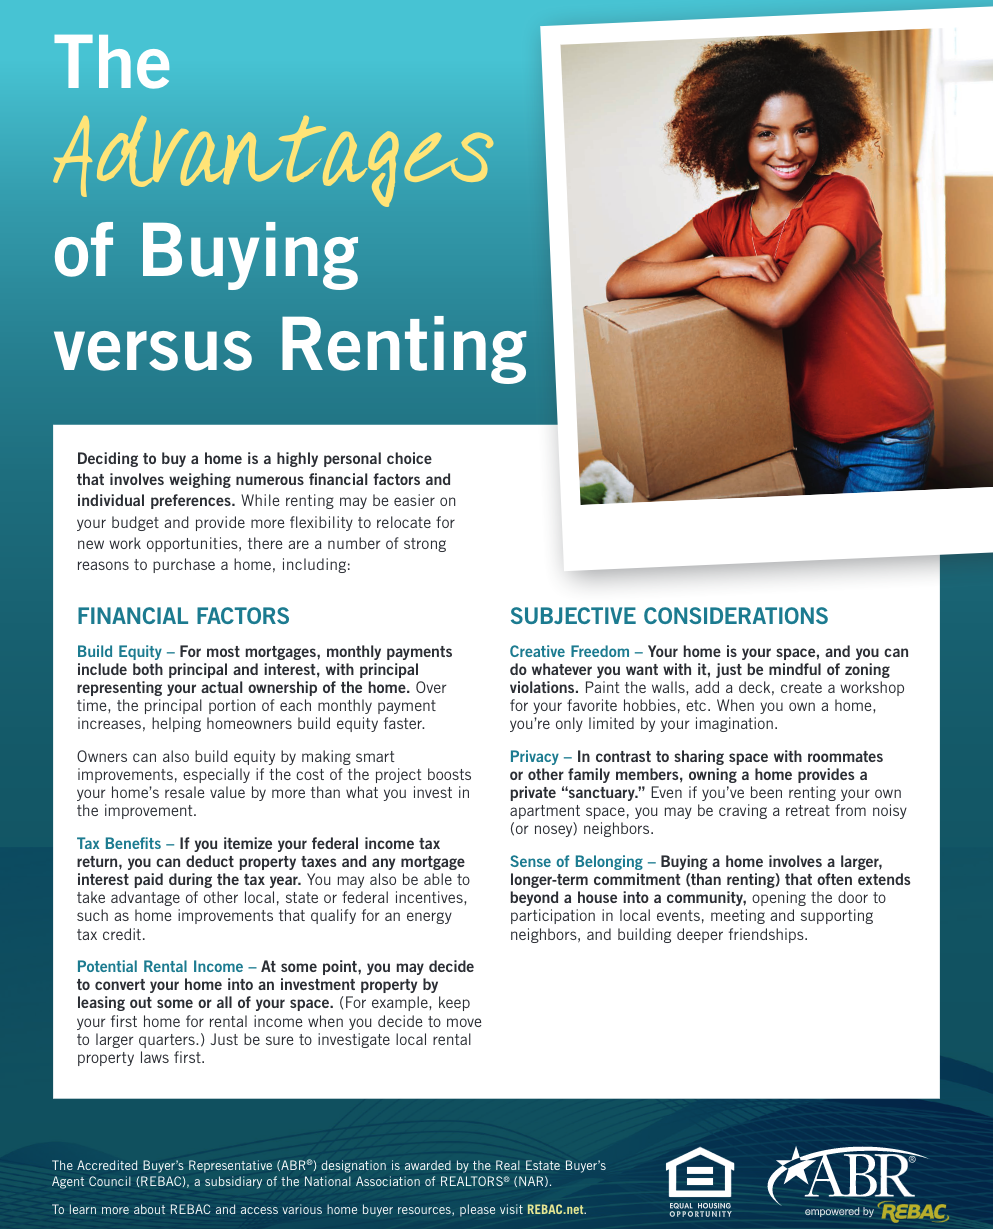 Buying vs Renting